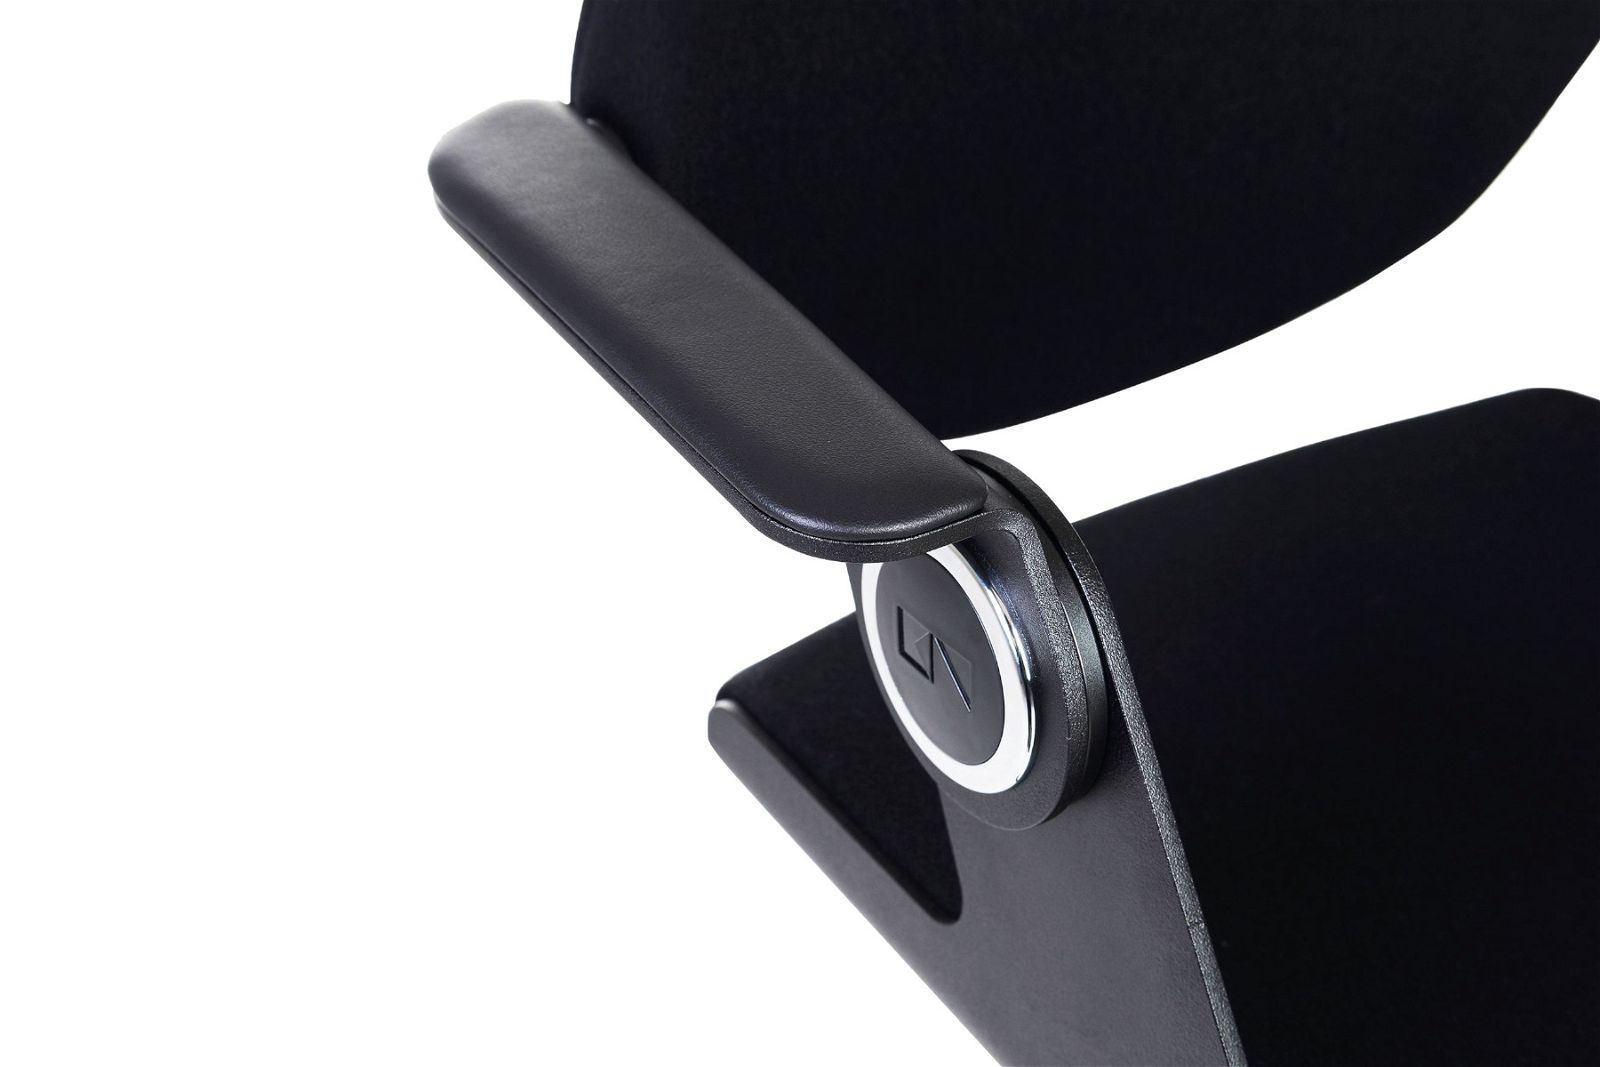 BALACE.CHAIR Steh-Sitz-Stuhl mit beweglicher Rückenlehne, Bezug wählbar